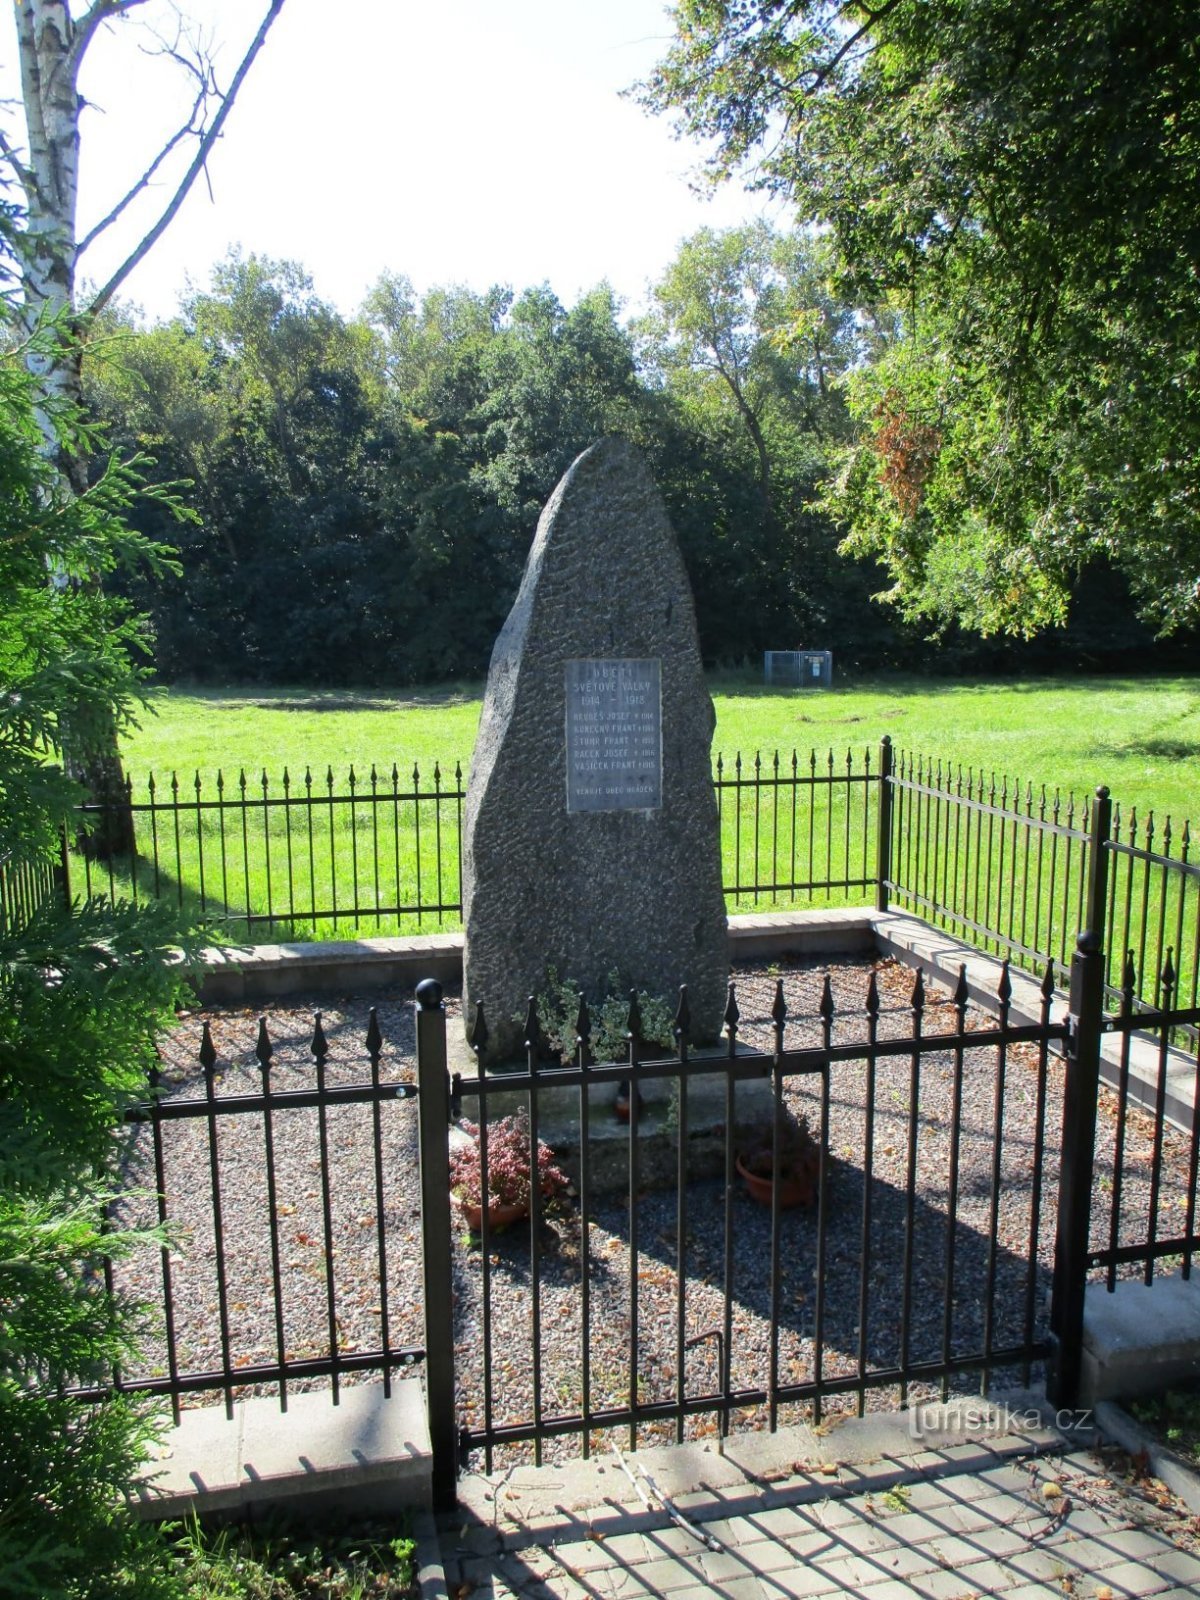 Đài tưởng niệm những người đã ngã xuống (Hrádek, 9.9.2020/XNUMX/XNUMX)